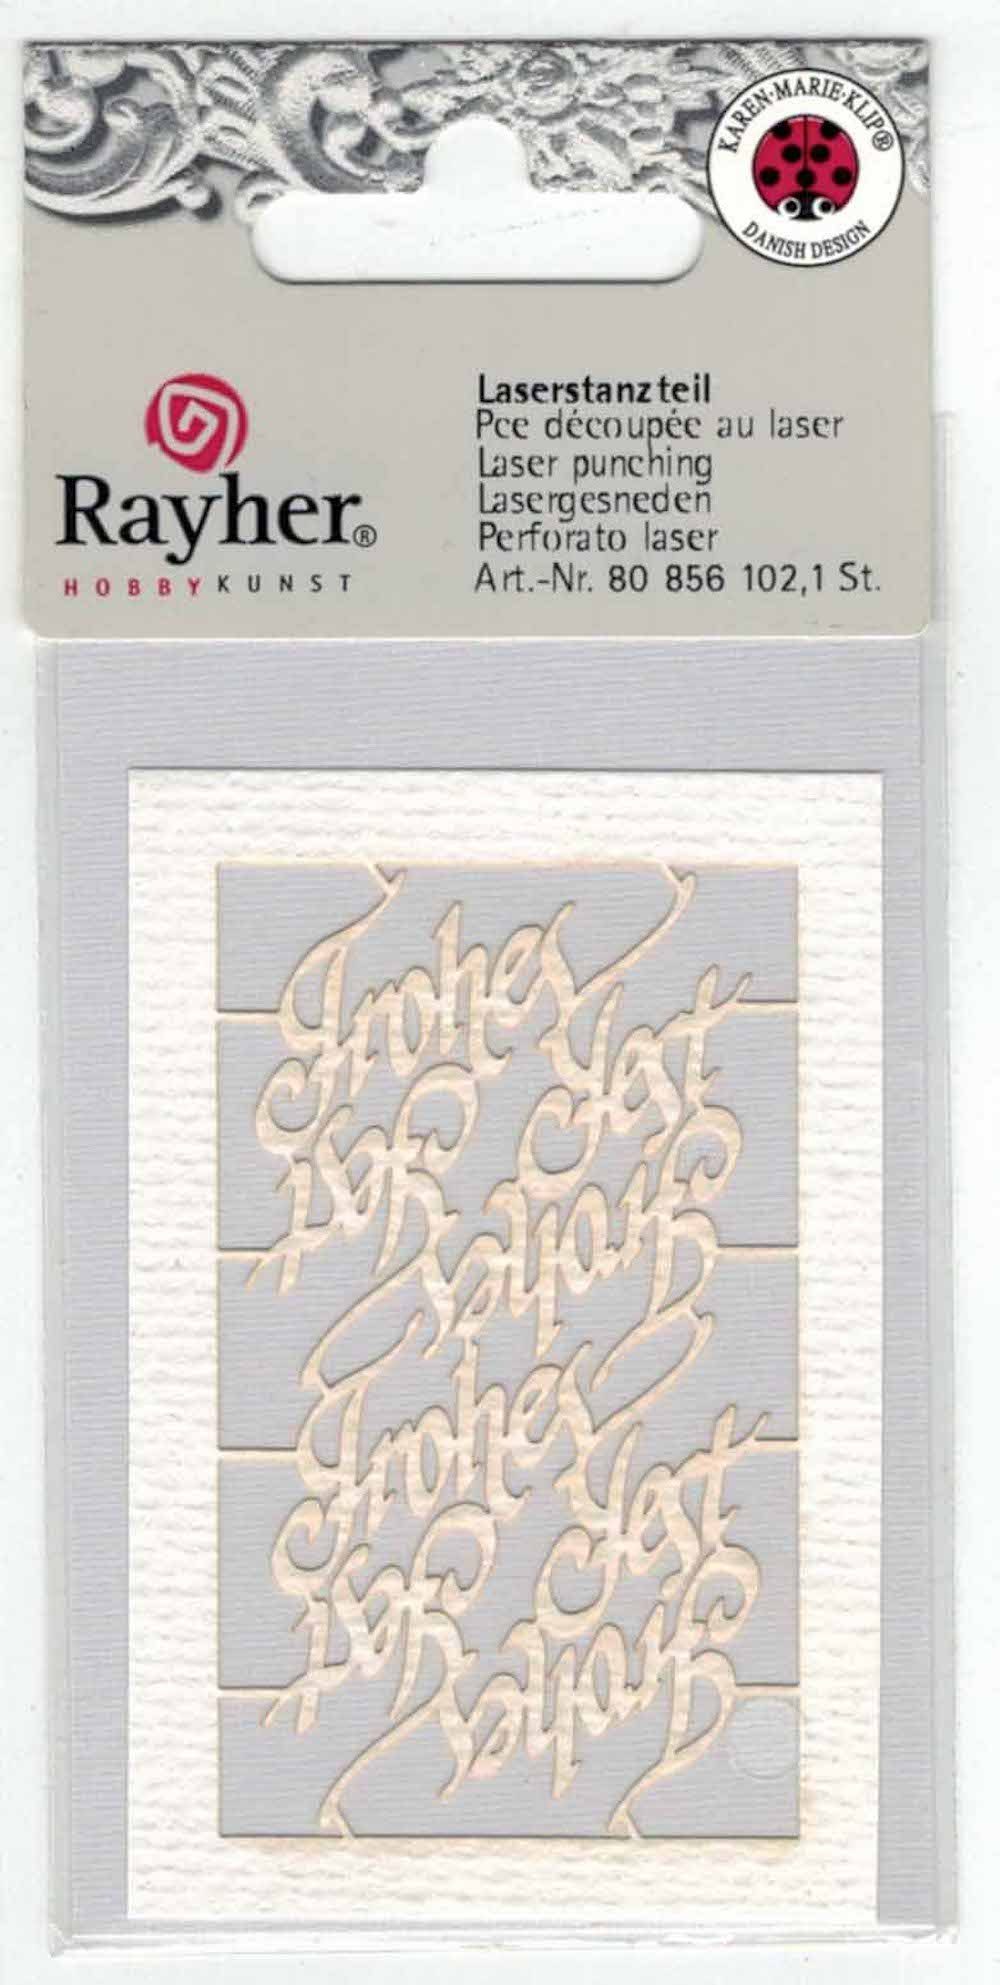 Rayher Zeichenpapier Laserstanzteil 'Frohes Fest' 7,5x5cm Weiß